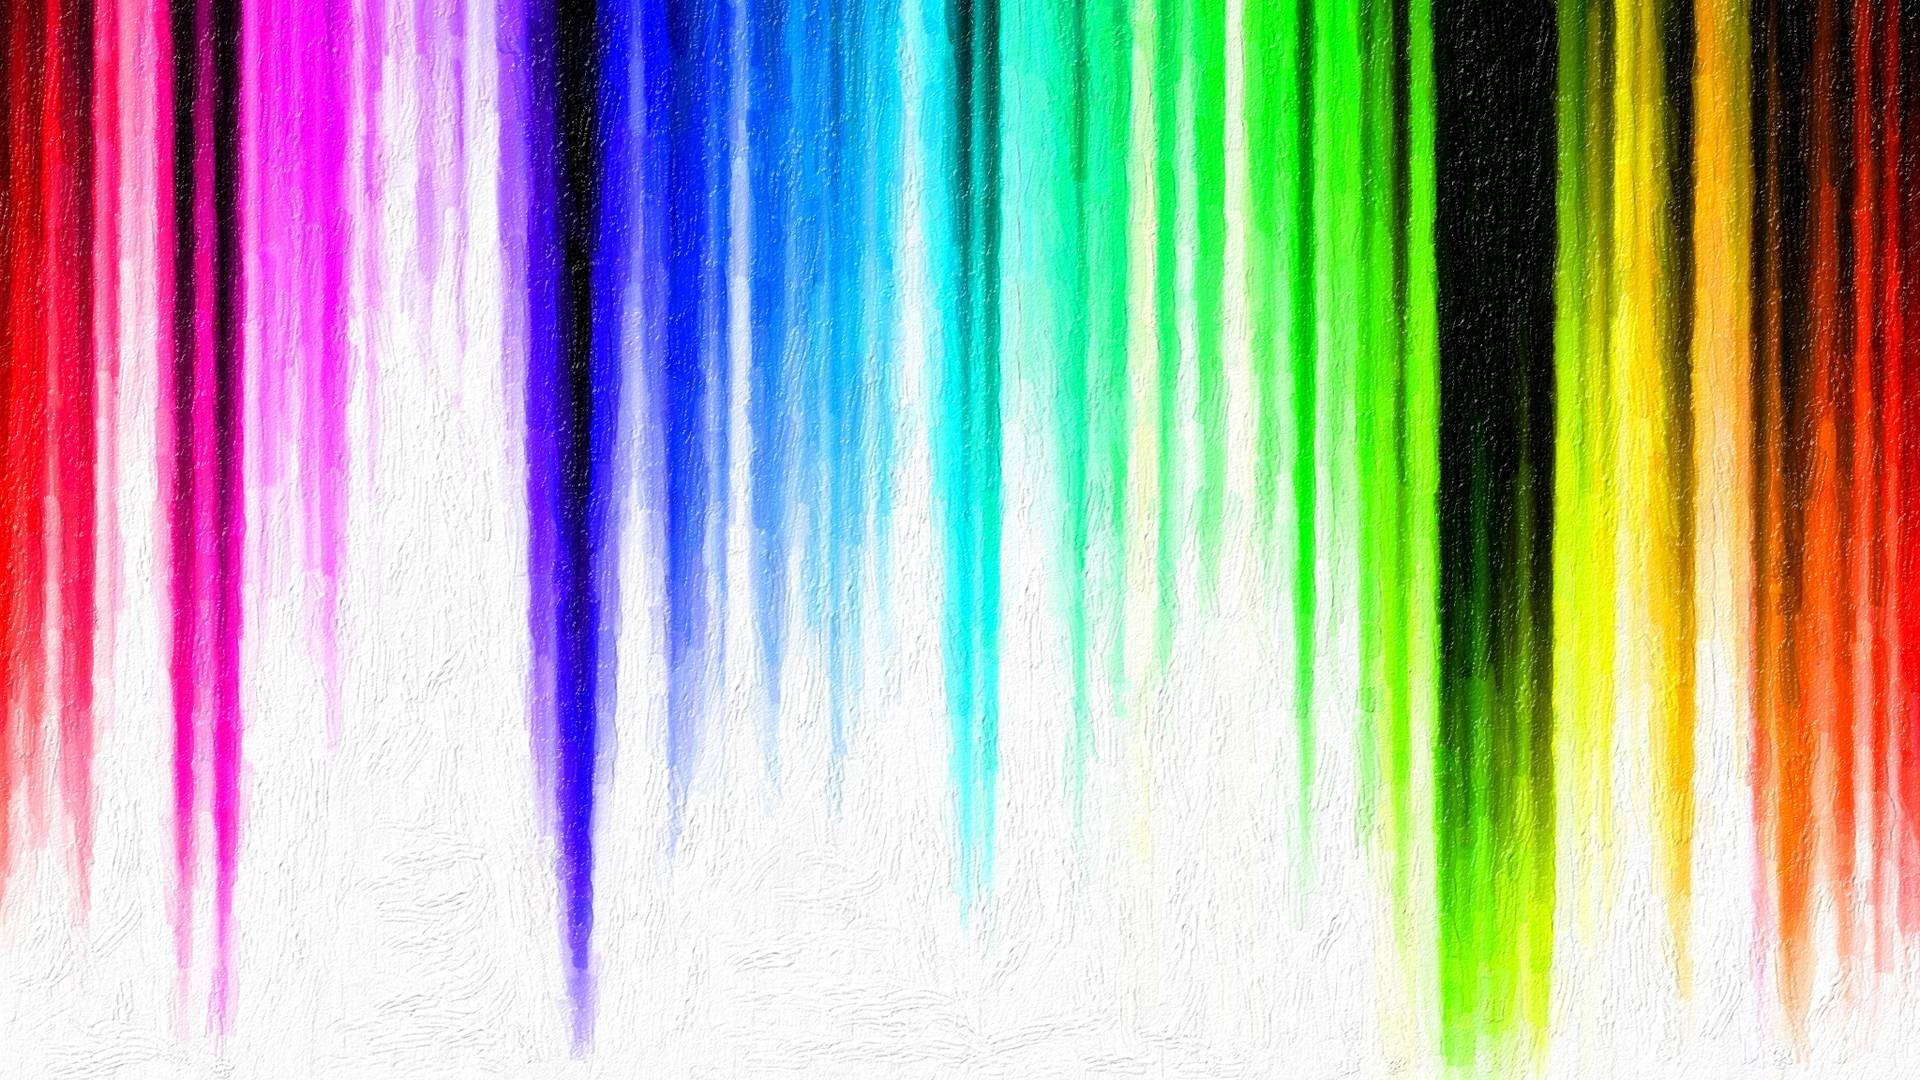 Rayasde Arco Iris Con Goteo De Acuarela Fondo de pantalla